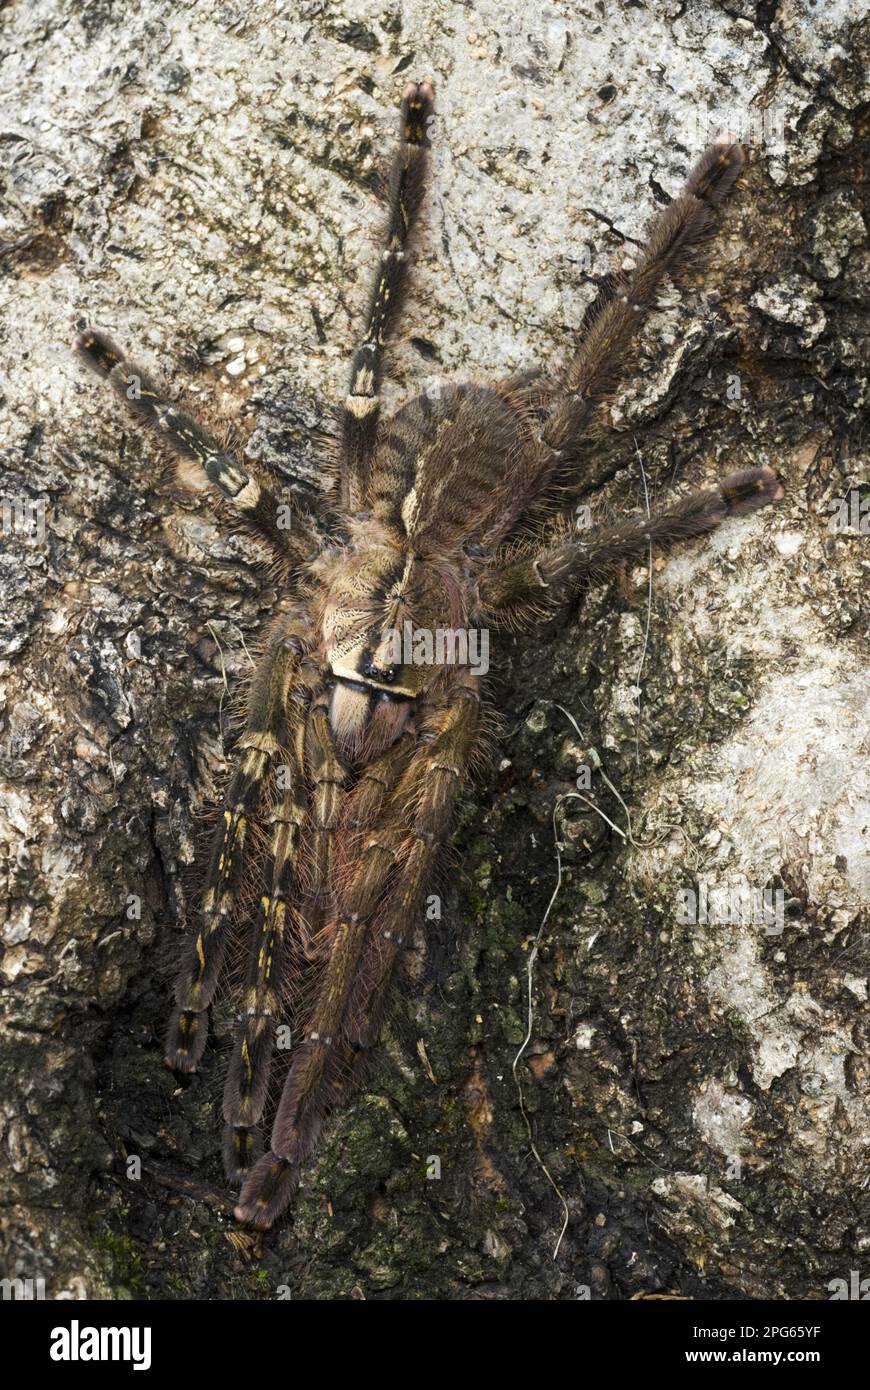 Tarantula con frange ornamentale (Poecilotheria ornata) subadulta, che mostra fenotipo gynandromorfico, il lato sinistro è 'male' e il lato destro è 'femmina' Foto Stock